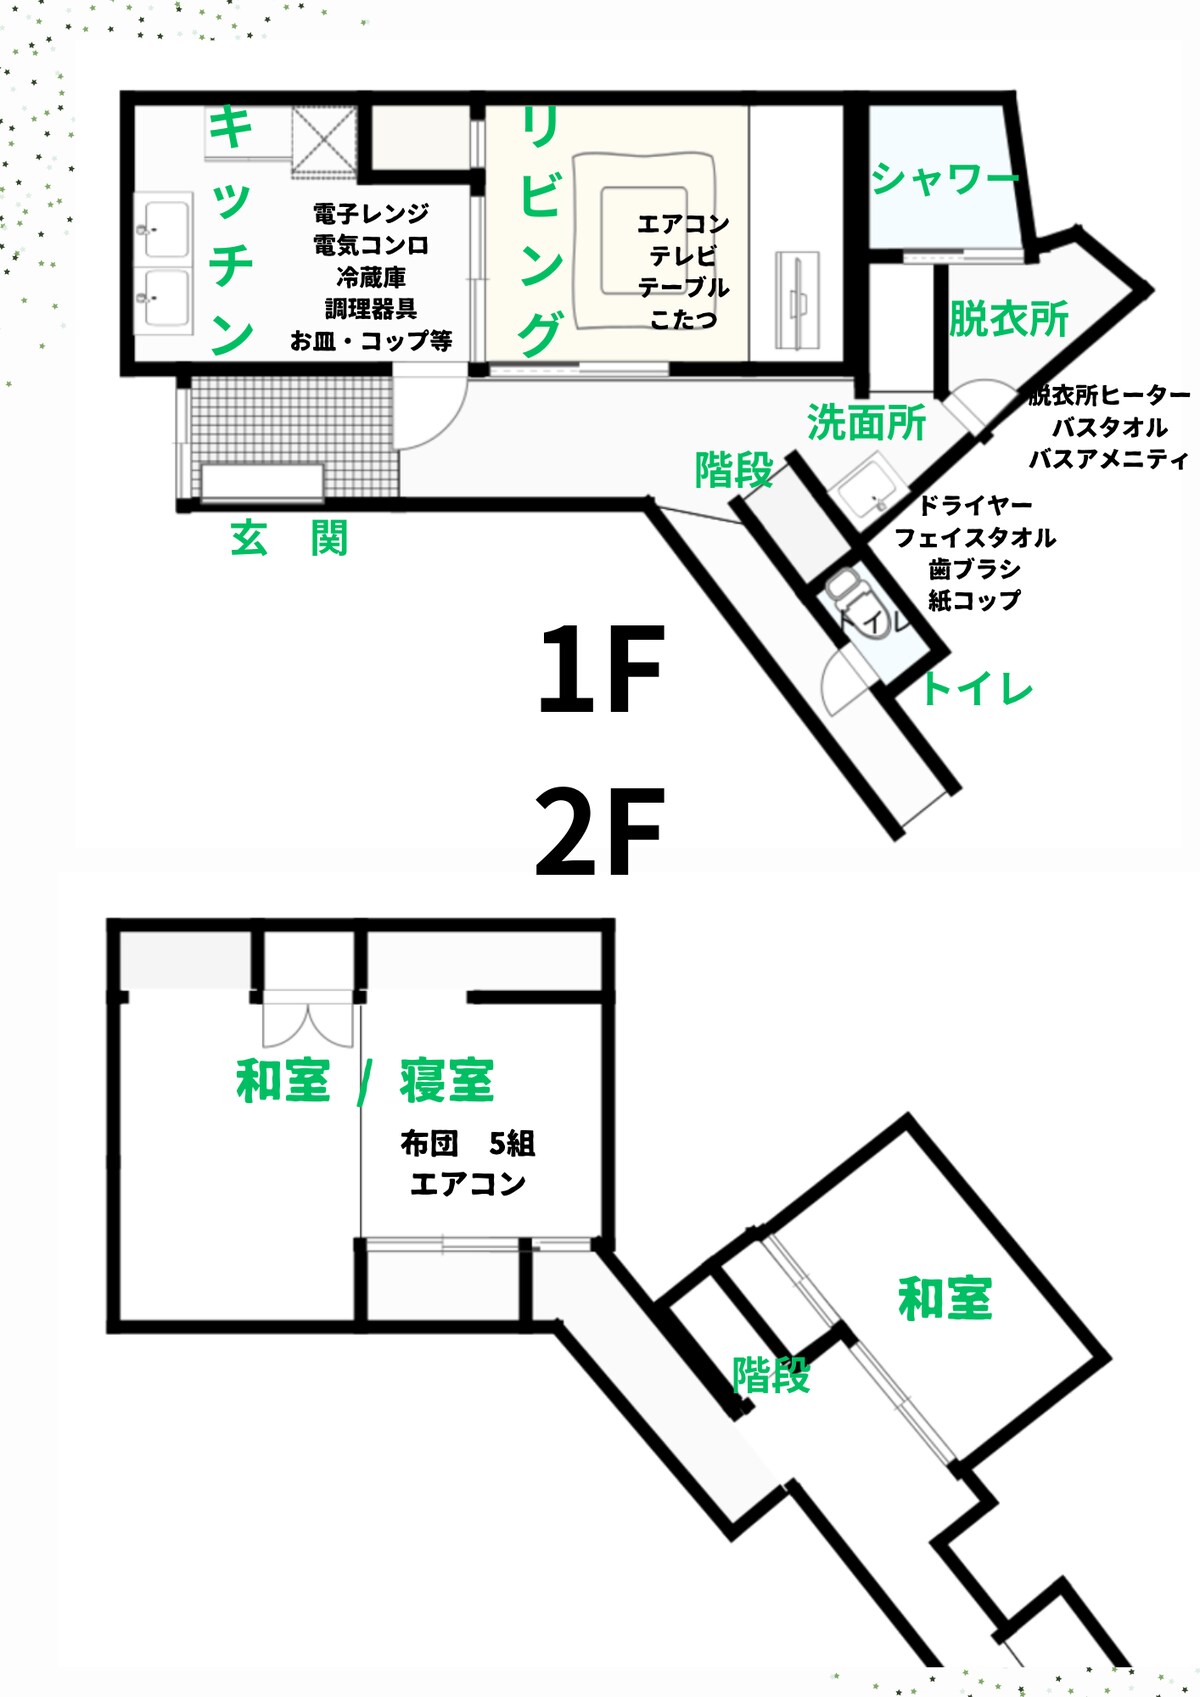 私人私人住宅距JR福井站2分钟路程（ 150米）